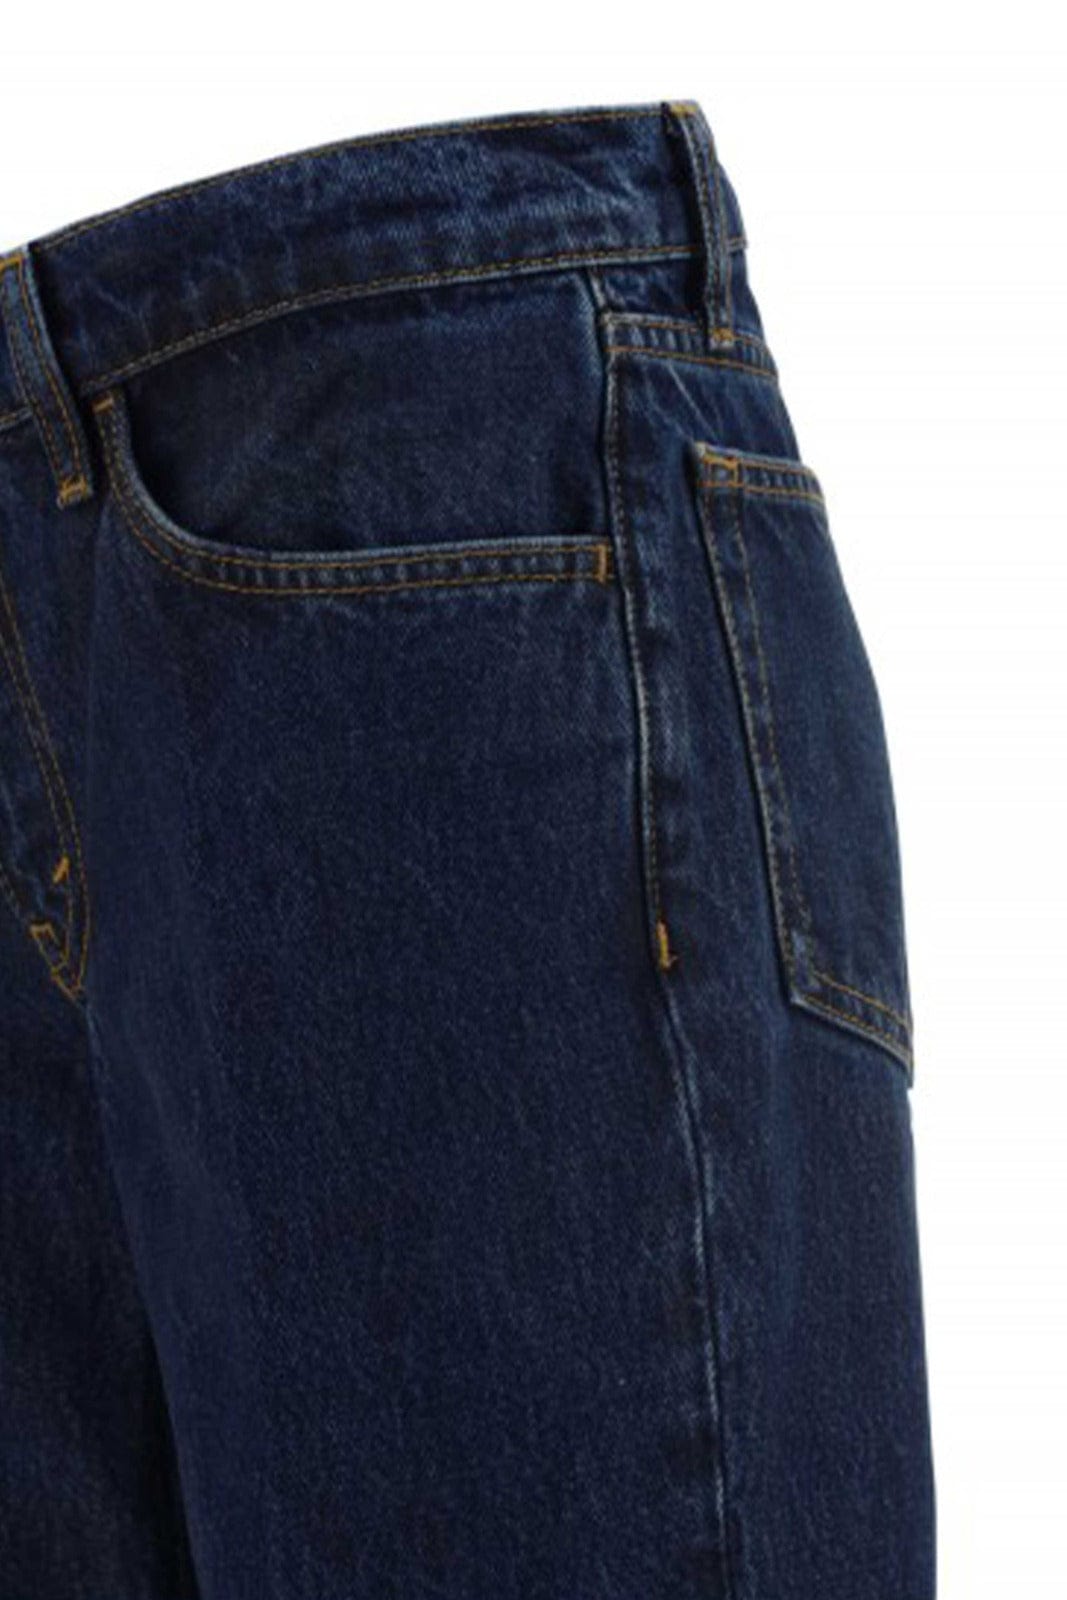 RE/DONE PANTALONE IN DENIM  Jeans Flare Blu Re/Done